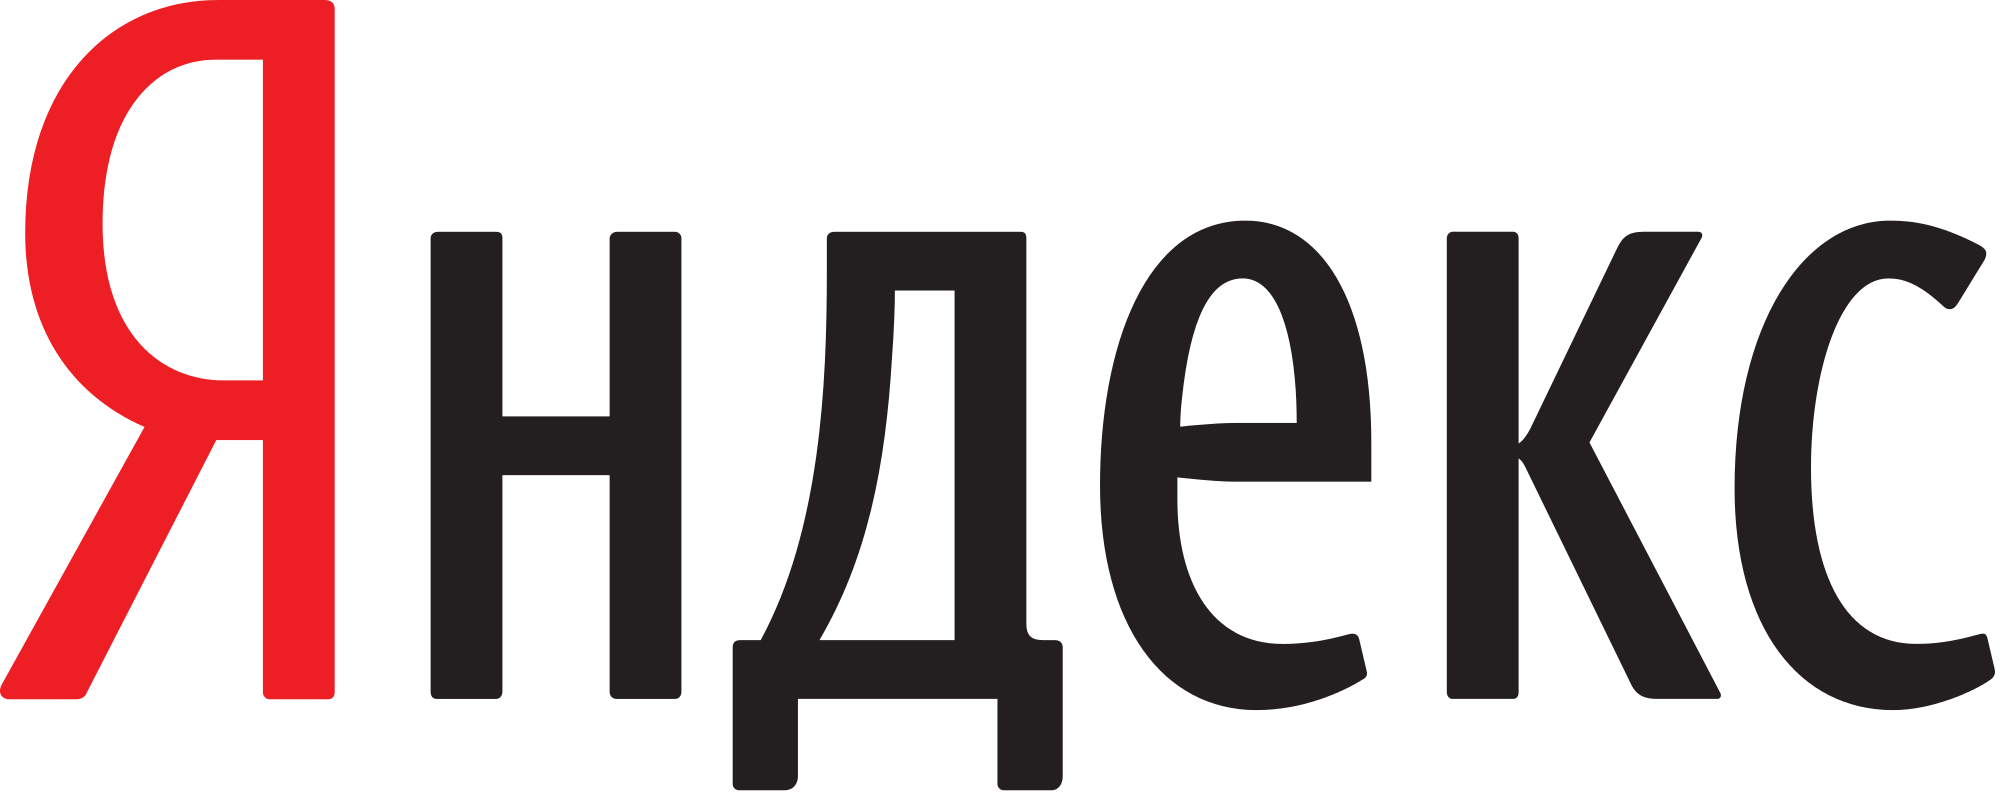 Читать отзывы о «Ваши зубы» в Яндекс